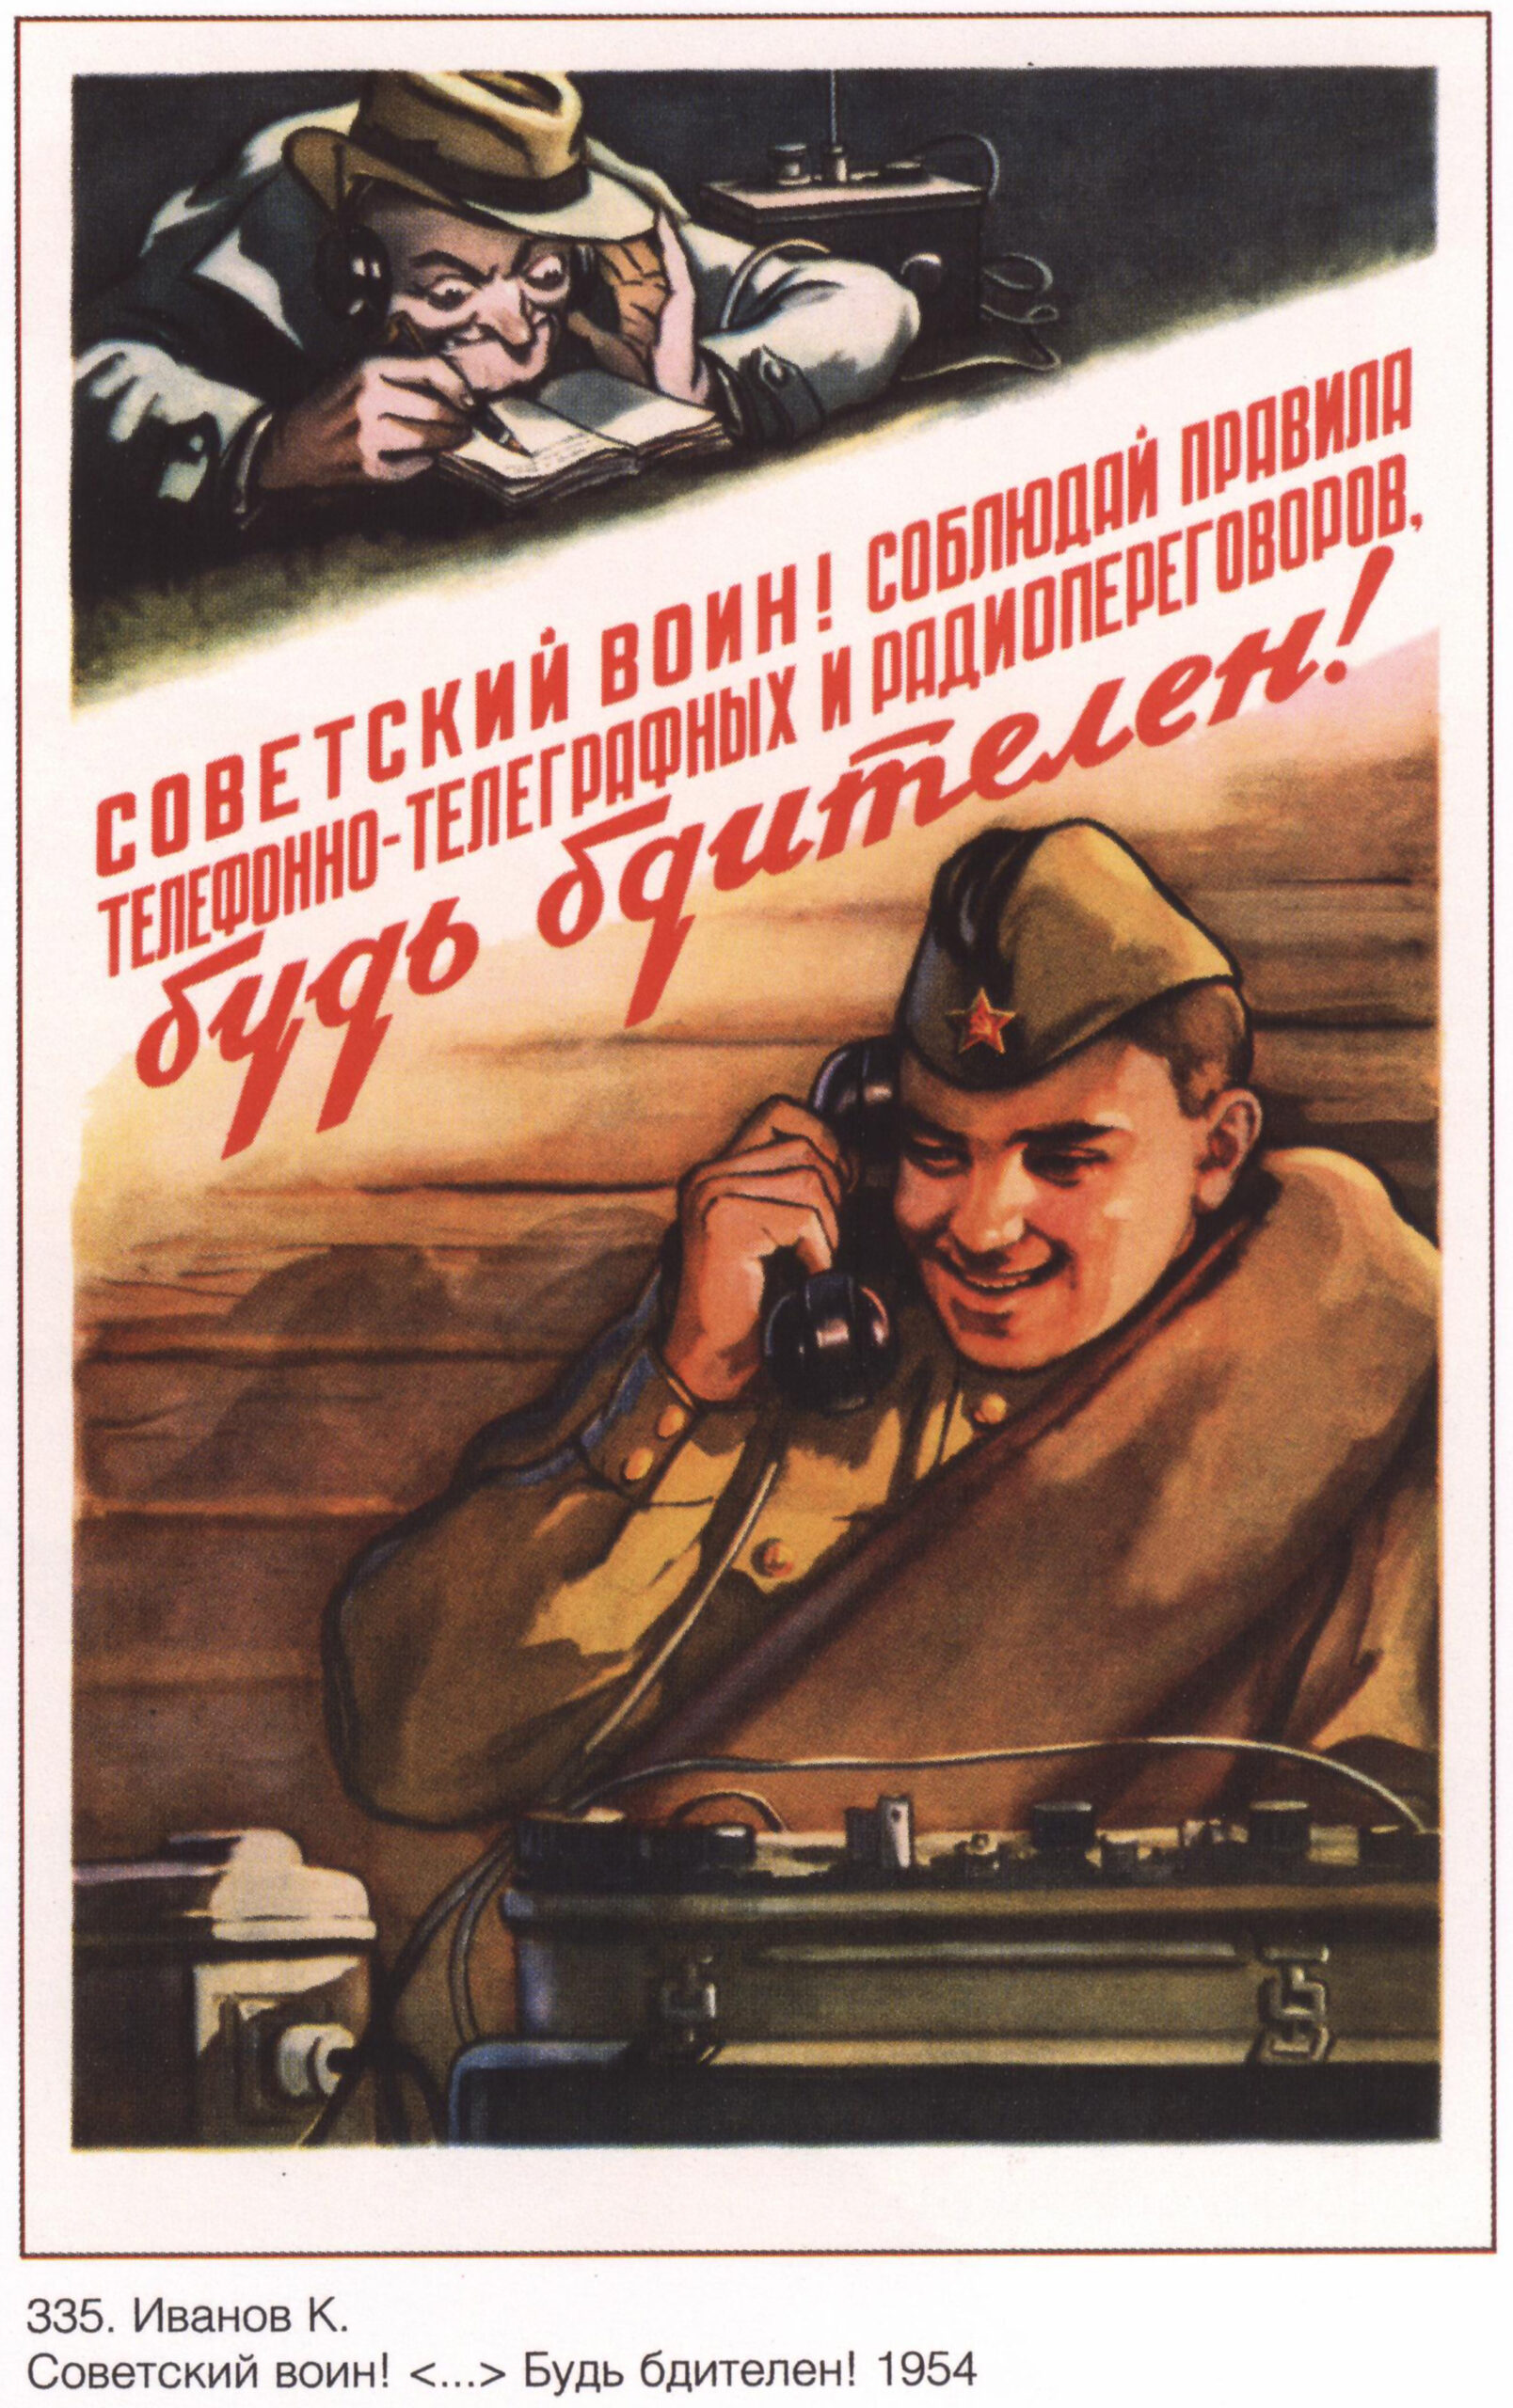 Советский плакат «Советский воин! Соблюдай правила телефонно-телеграфных и радиопереговоров, будь бдителен!»